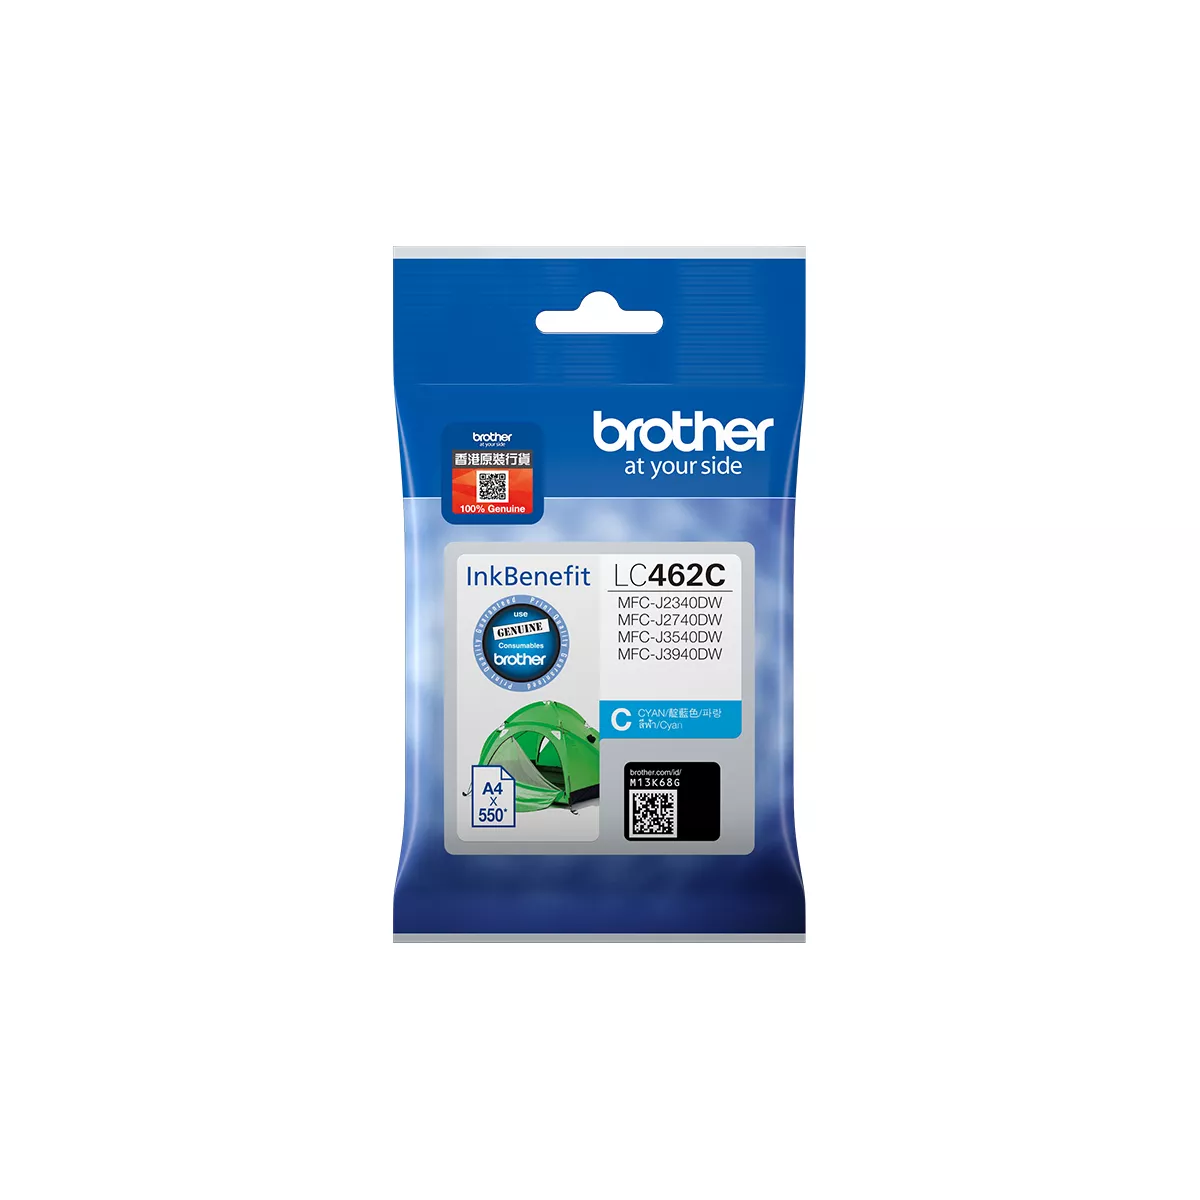 Achat Brother LC462C et autres produits de la marque Brother